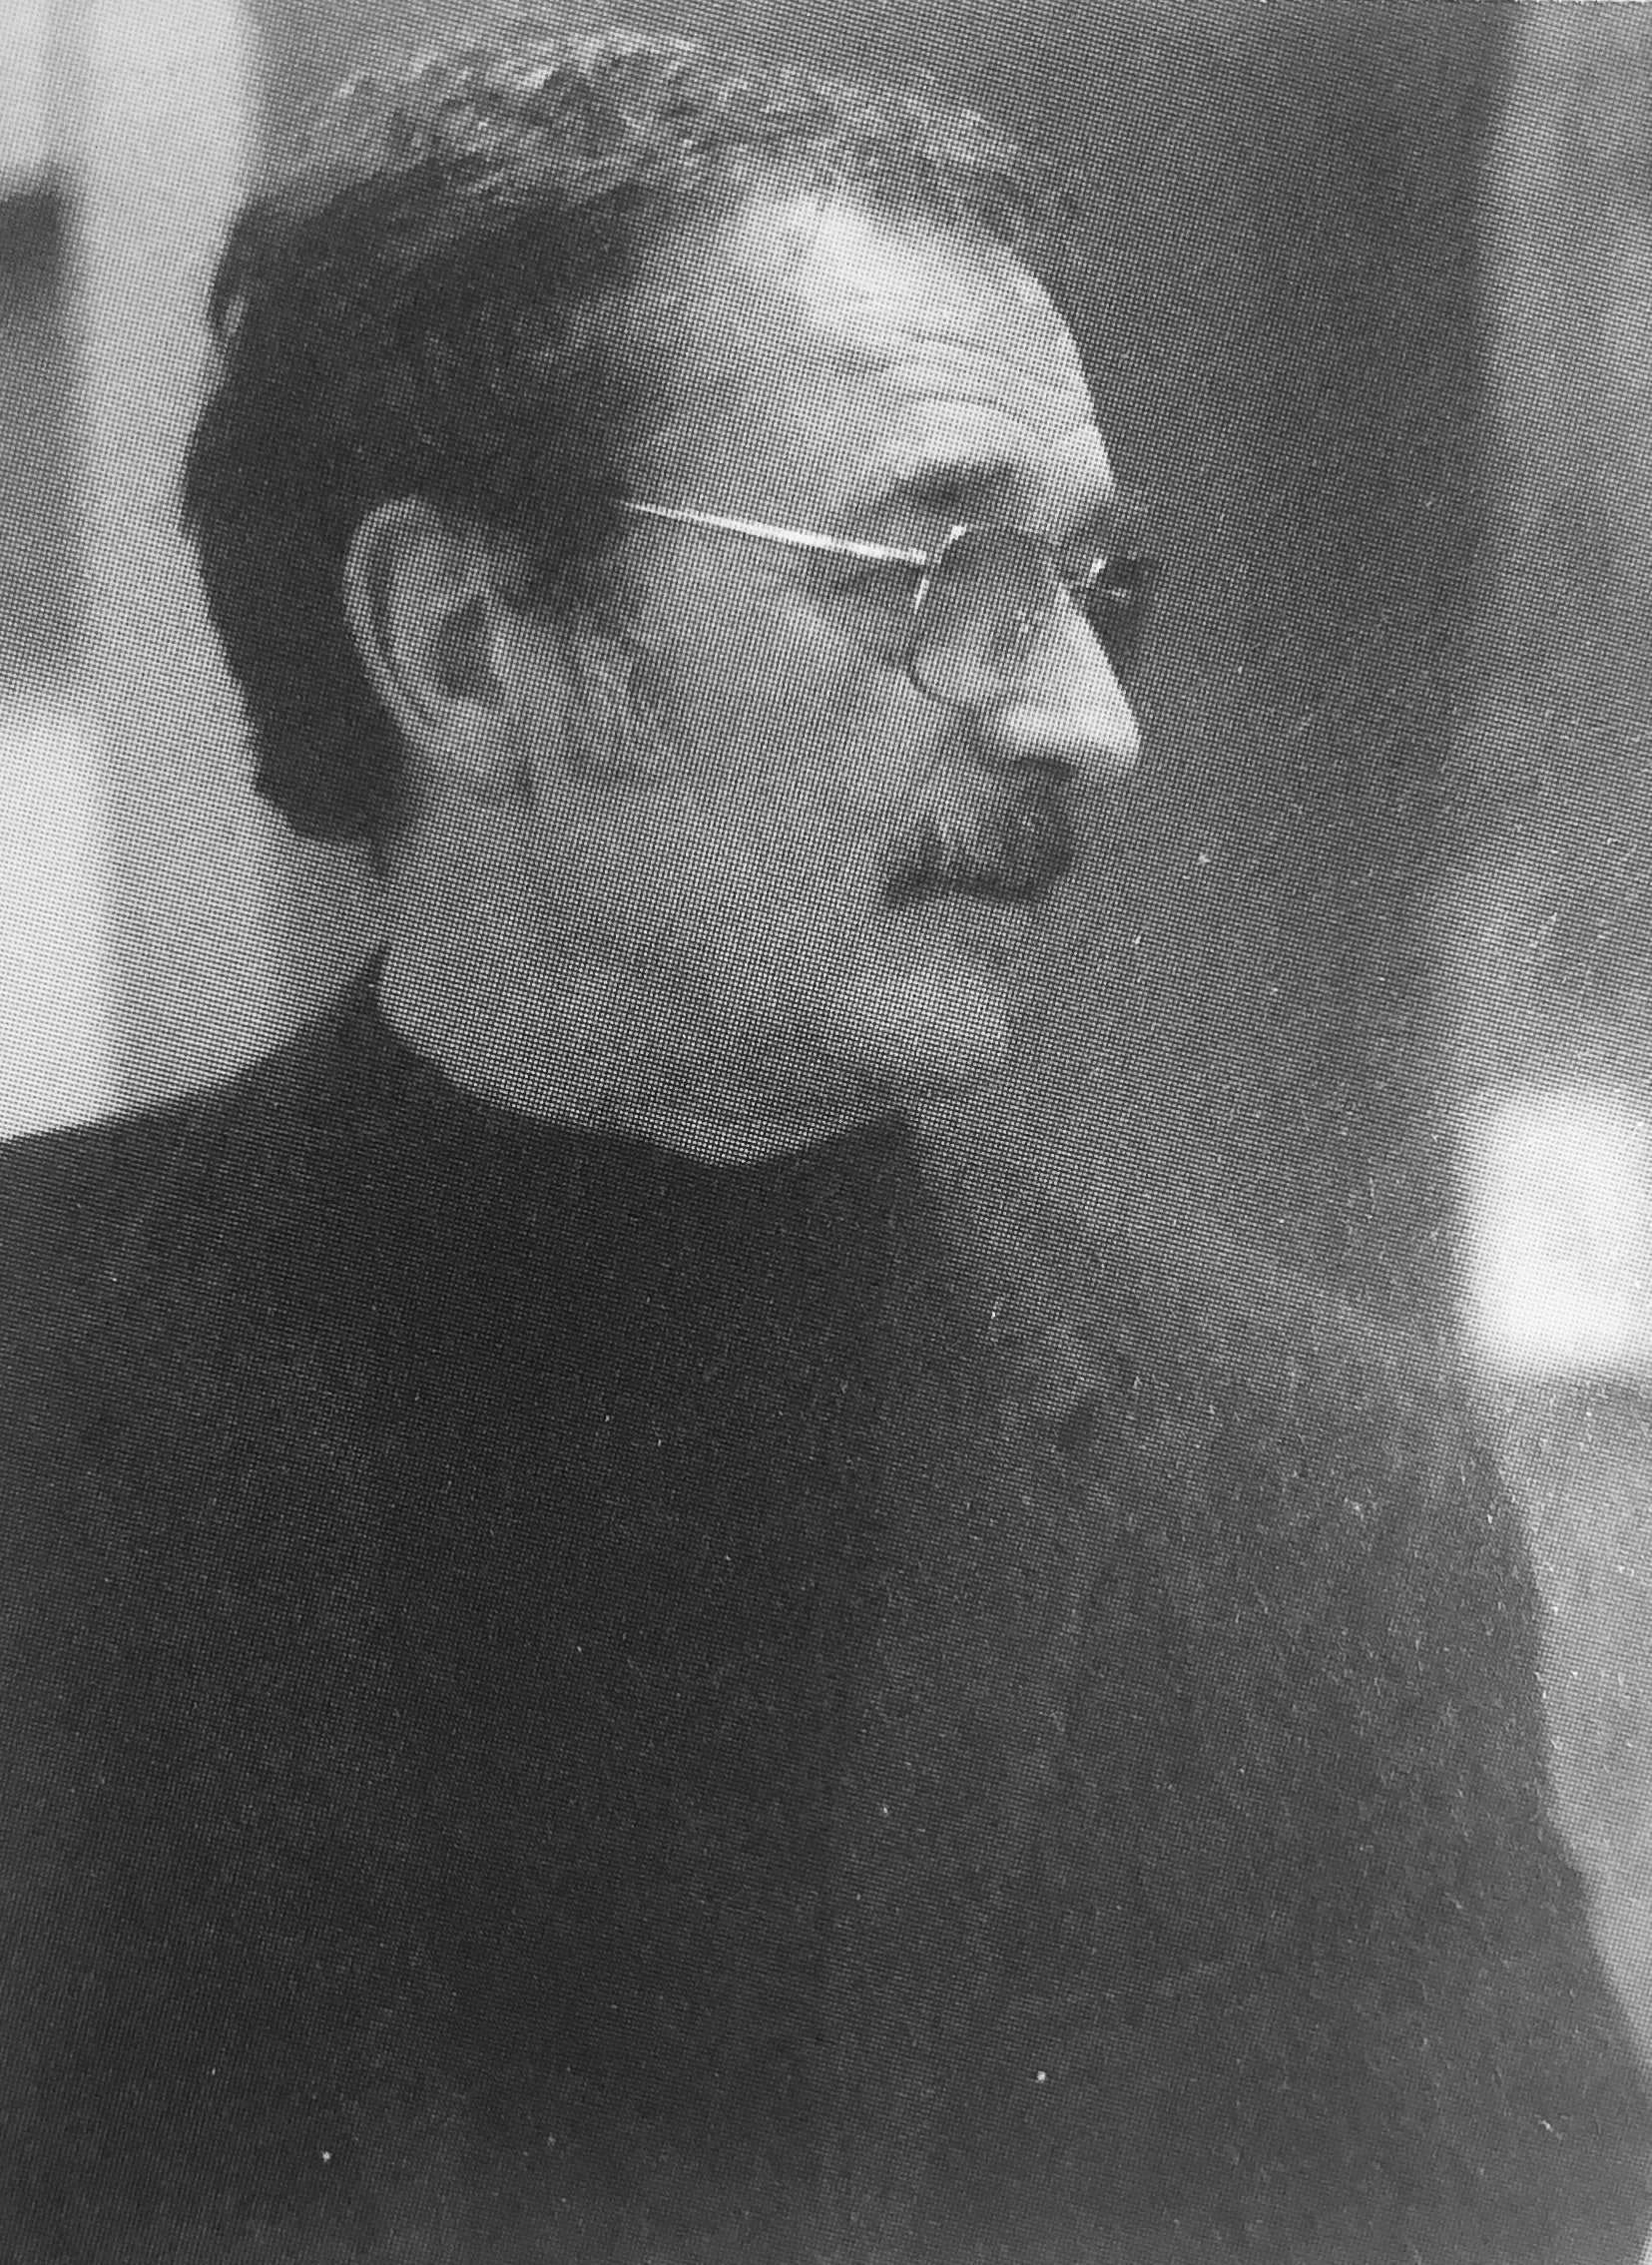 Cesare Benaglia Italian Artist